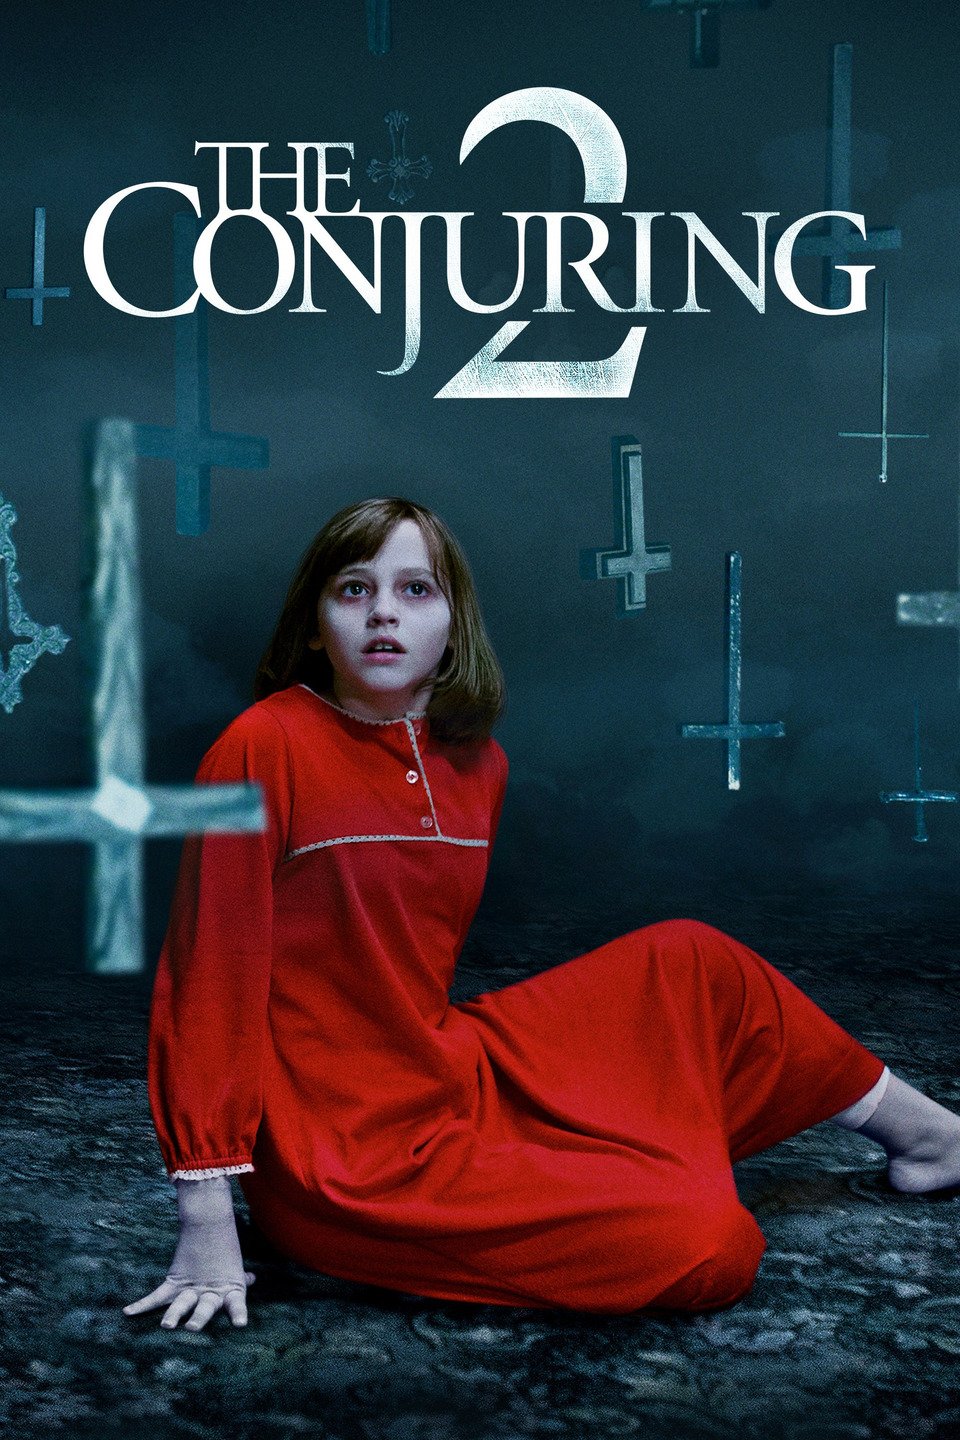 [MINI Super-HQ] The Conjuring 2 (2016) คอนเจอริ่ง คนเรียกผี ภาค 2 [1080p] [พากย์ไทย 5.1 + เสียงอังกฤษ DTS] [บรรยายไทย + อังกฤษ] [เสียงไทย + ซับไทย] [OPENLOAD]